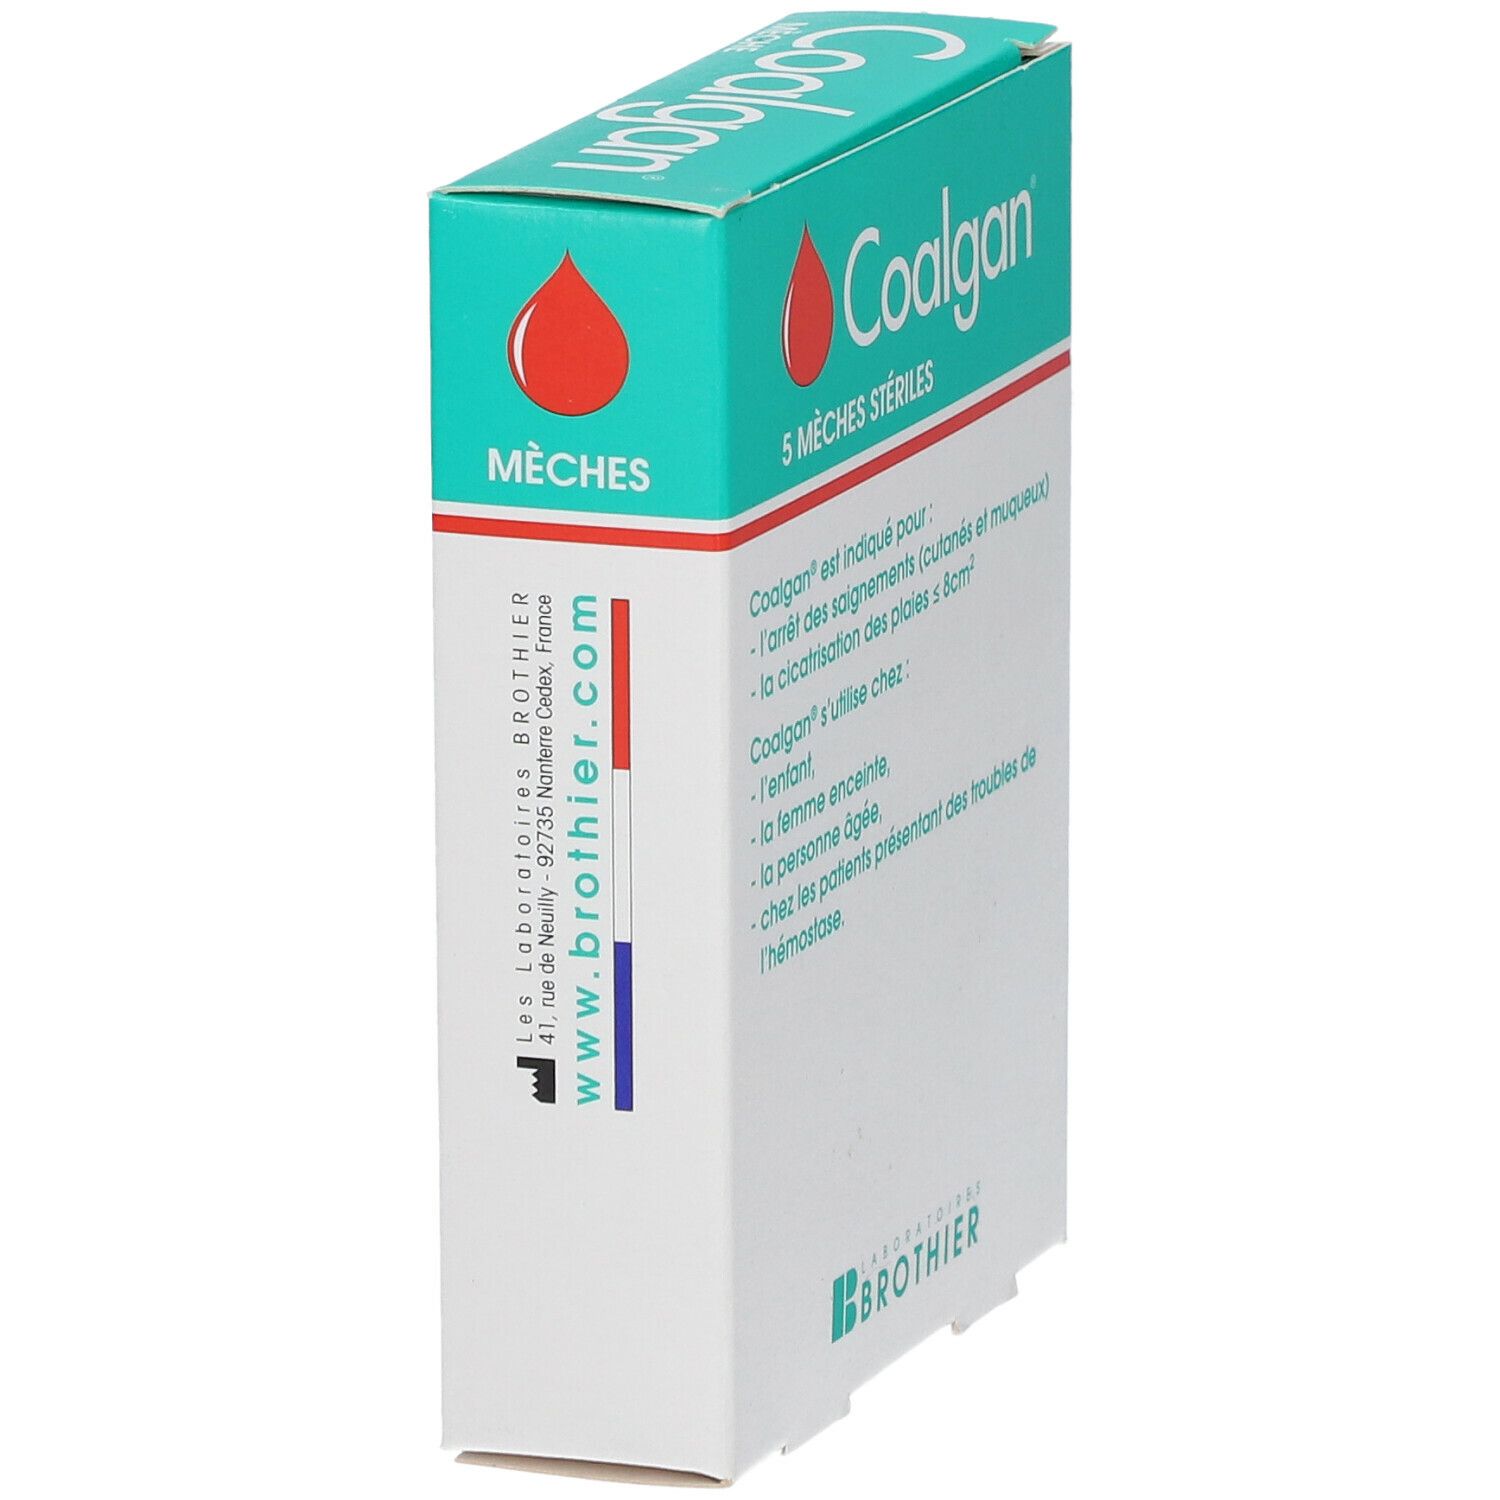 Coalgan - Coton hydrophile pour le nez - My Pharmacie Box